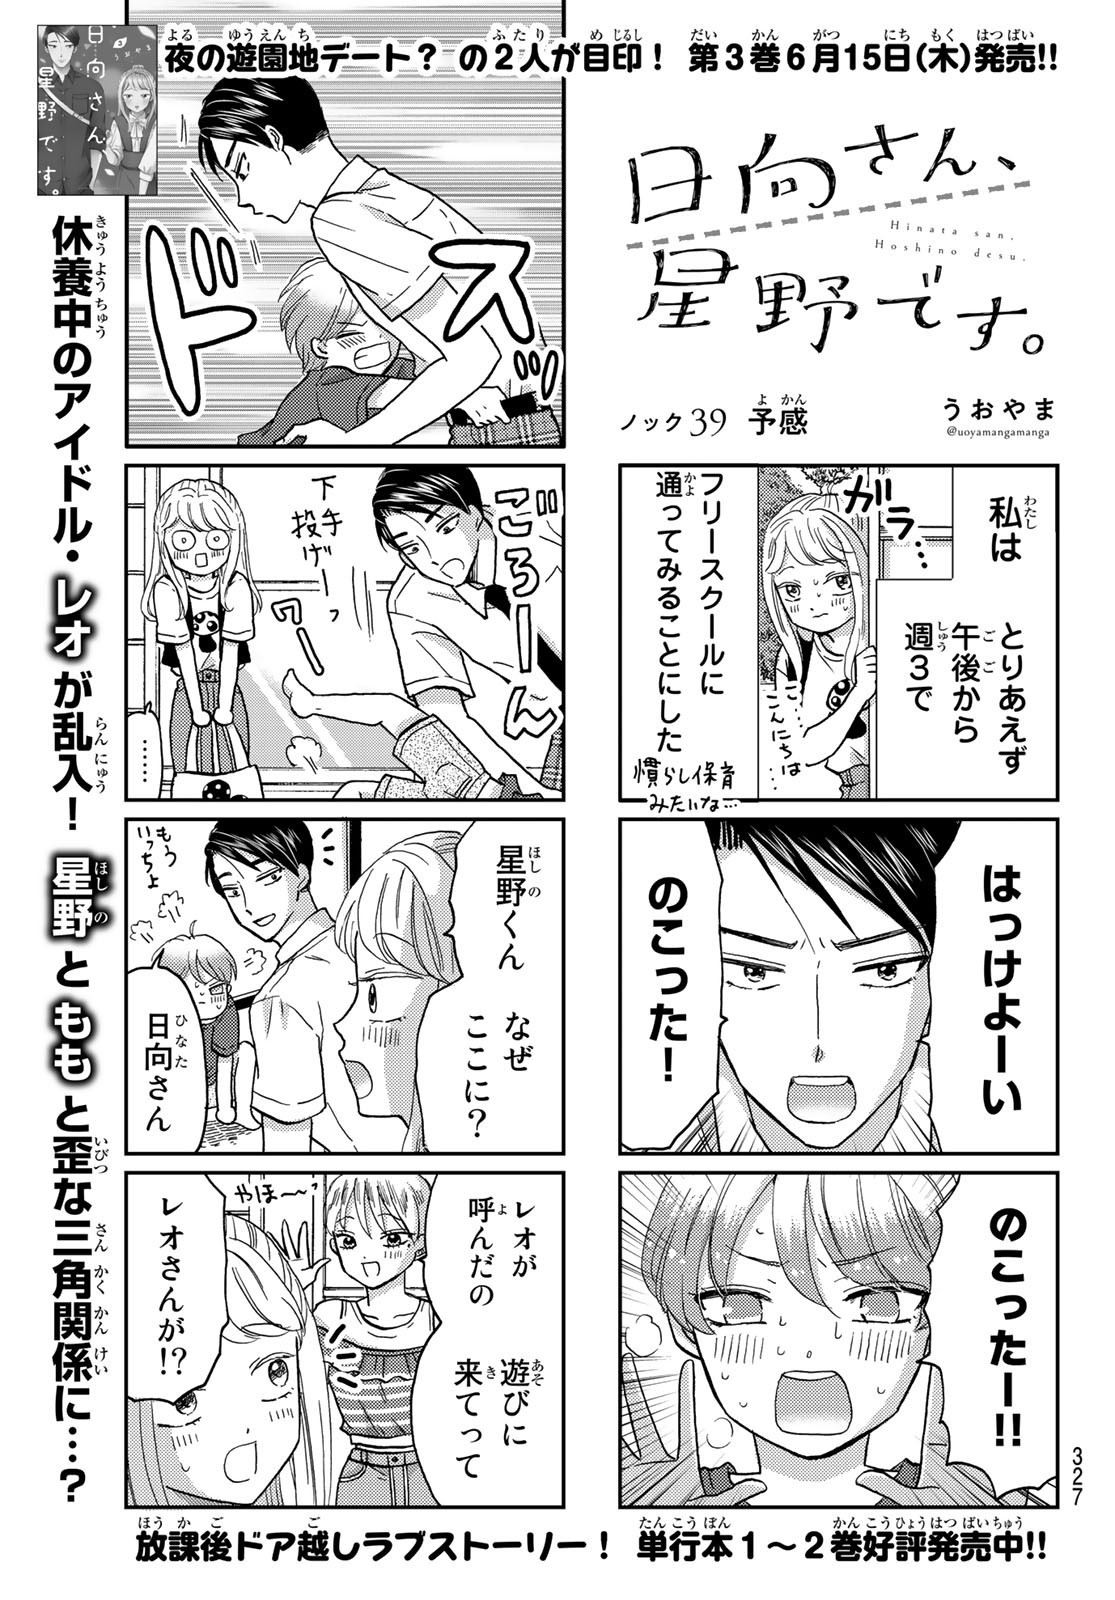 Hinata-san, Hoshino desu. - Chapter 039 - Page 1